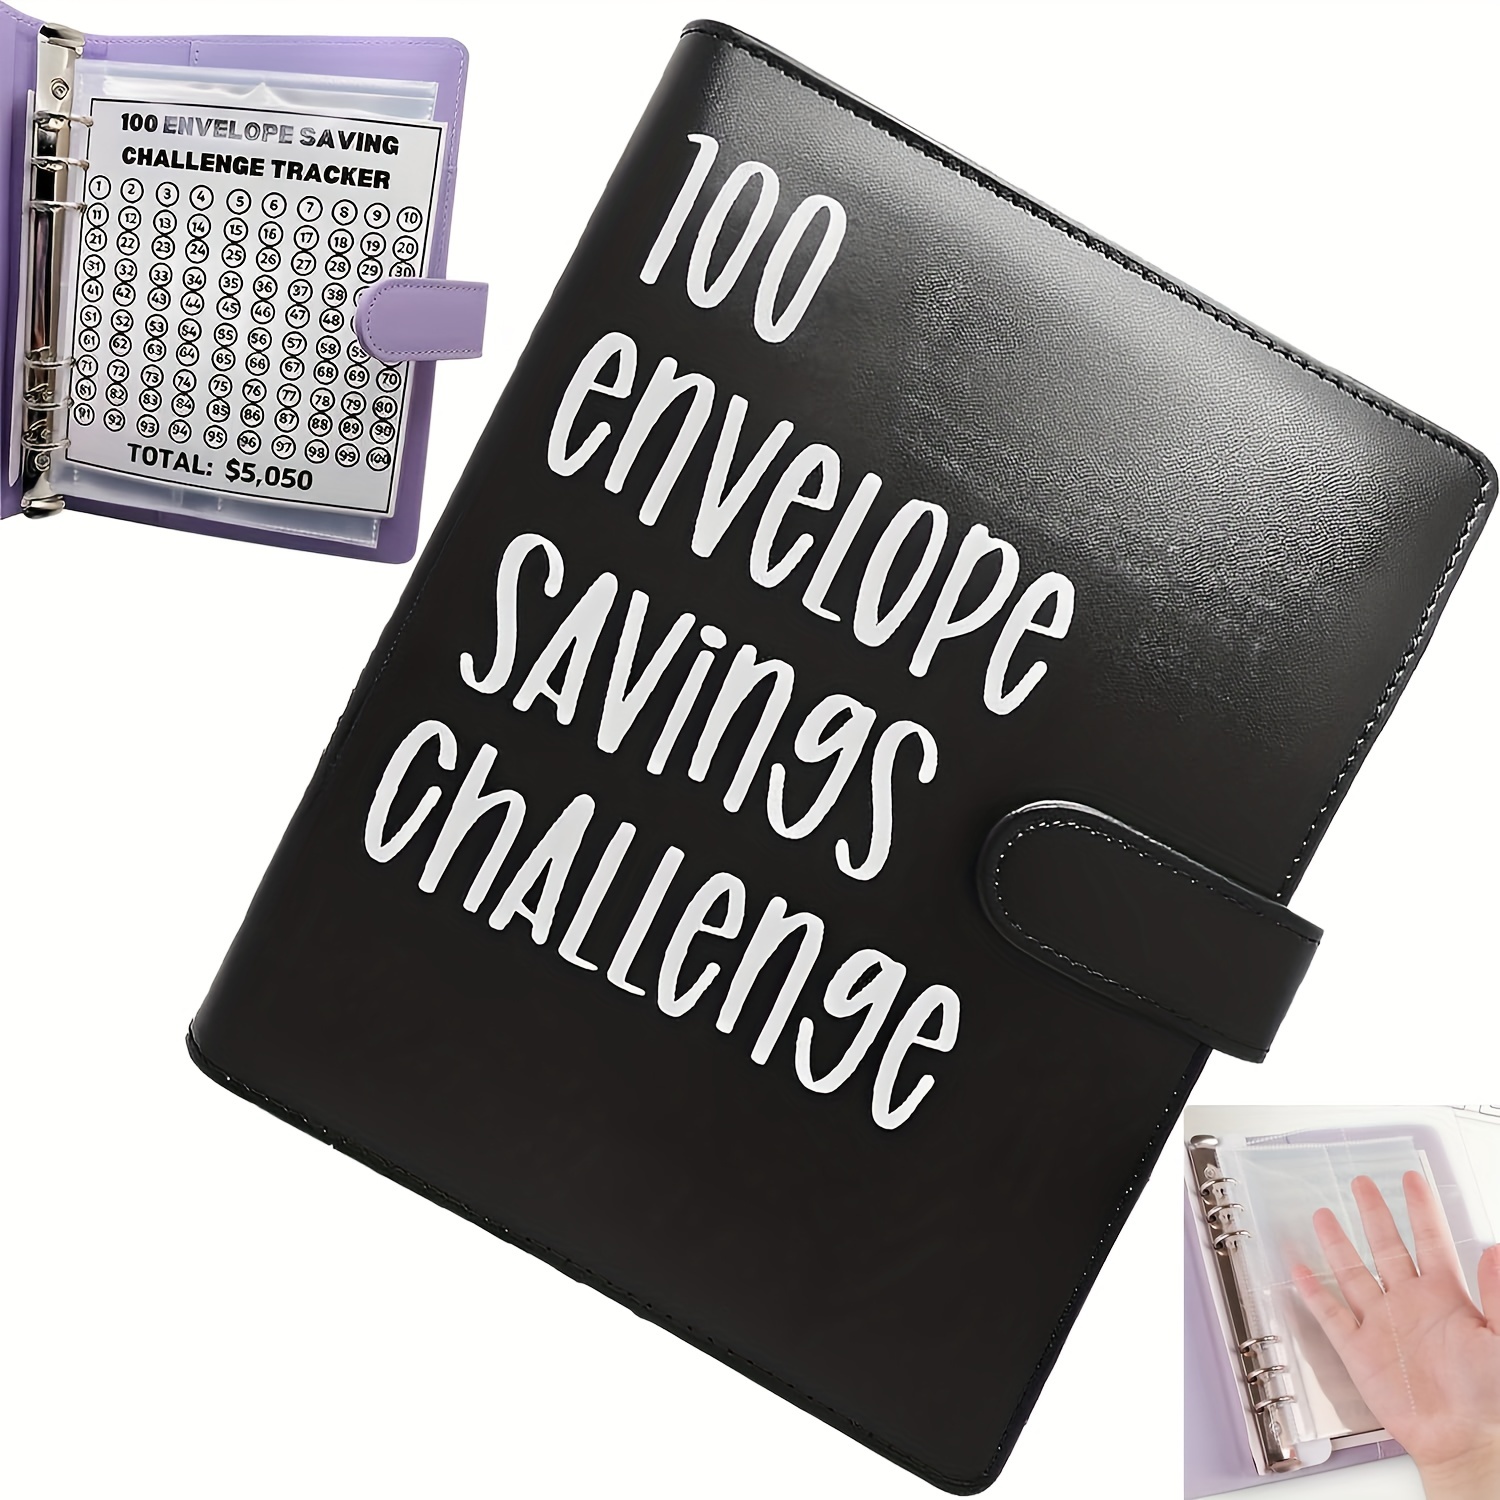 Classeur de défi de 100 enveloppes, moyen facile et amusant d’économiser 5  050 $, classeur de défis d’épargne, classeur budgétaire avec enveloppes de